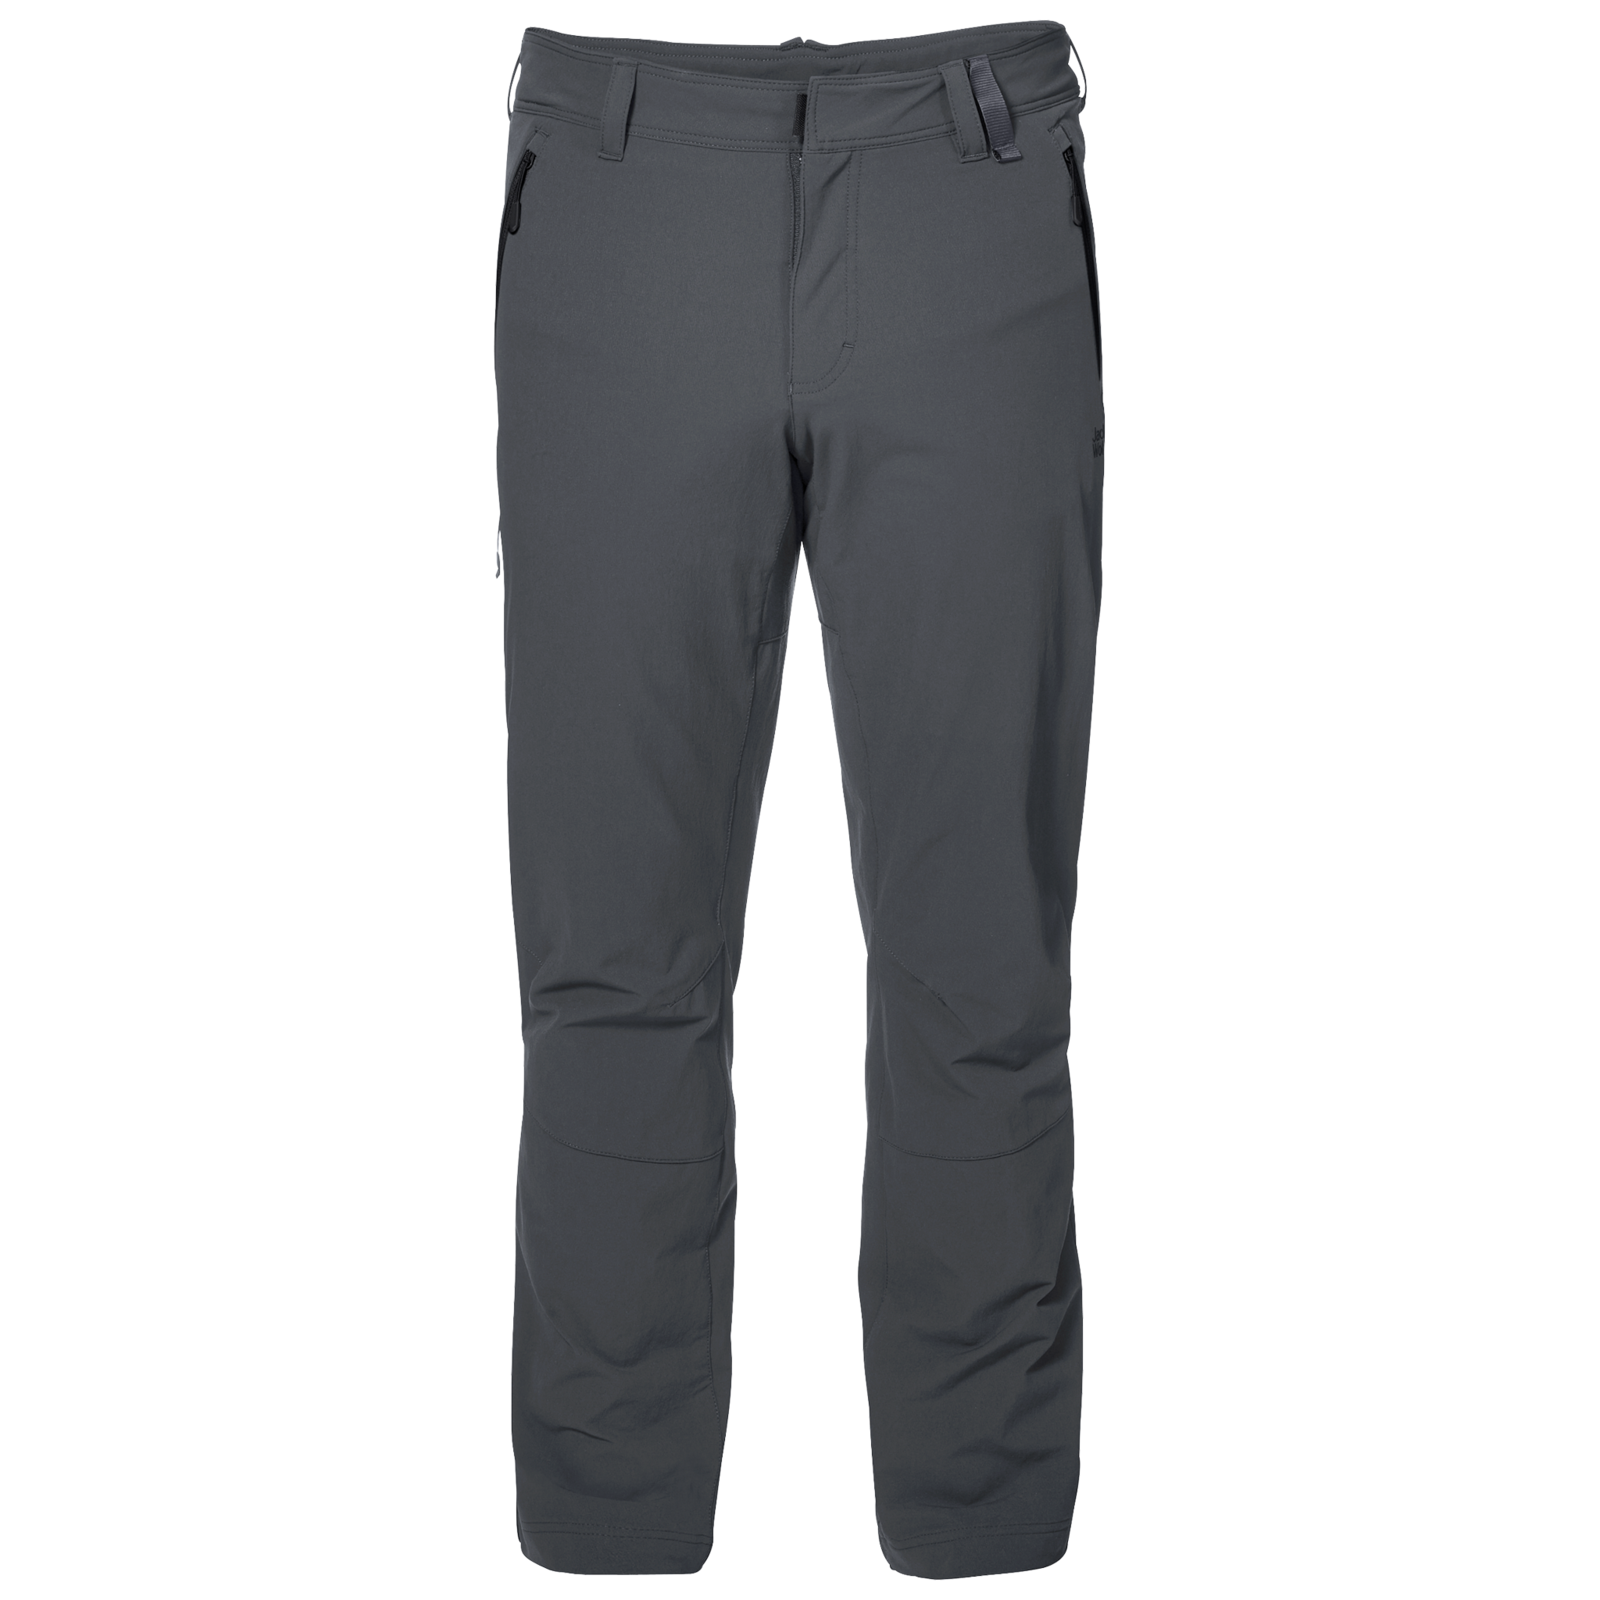 Oprichter verontschuldigen Winkelcentrum Jack Wolfskin Men's Activate XT Pants Winter Outdoor Trousers Hiking | eBay